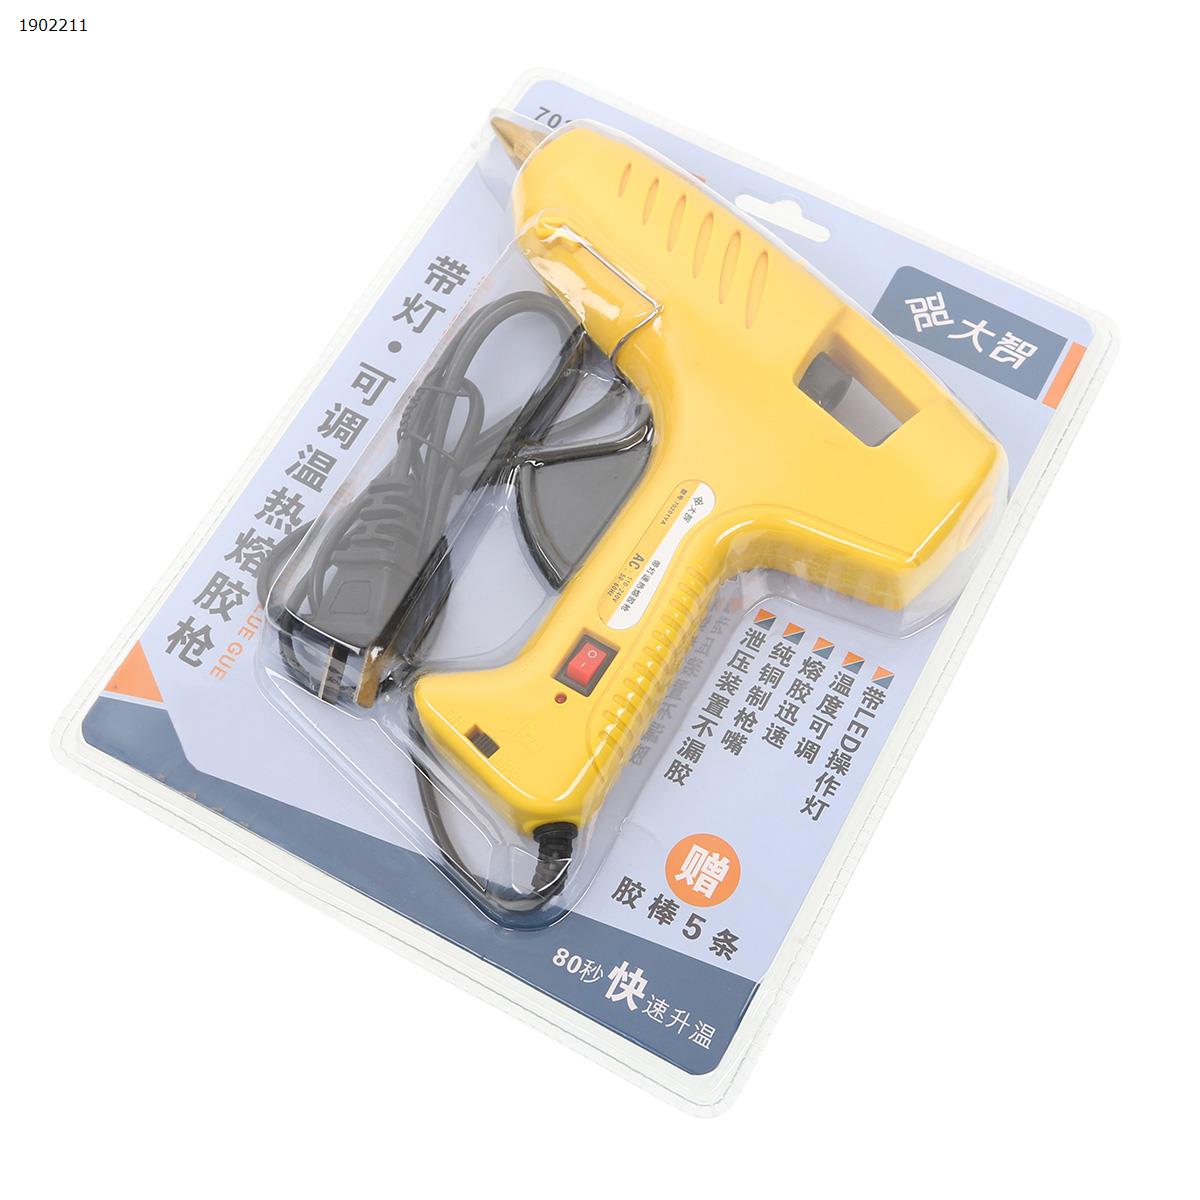 LED Glue Gun (English Standard, Containing 10 Glue Guns) Tool and tool accessories Glue gun (English Standard)